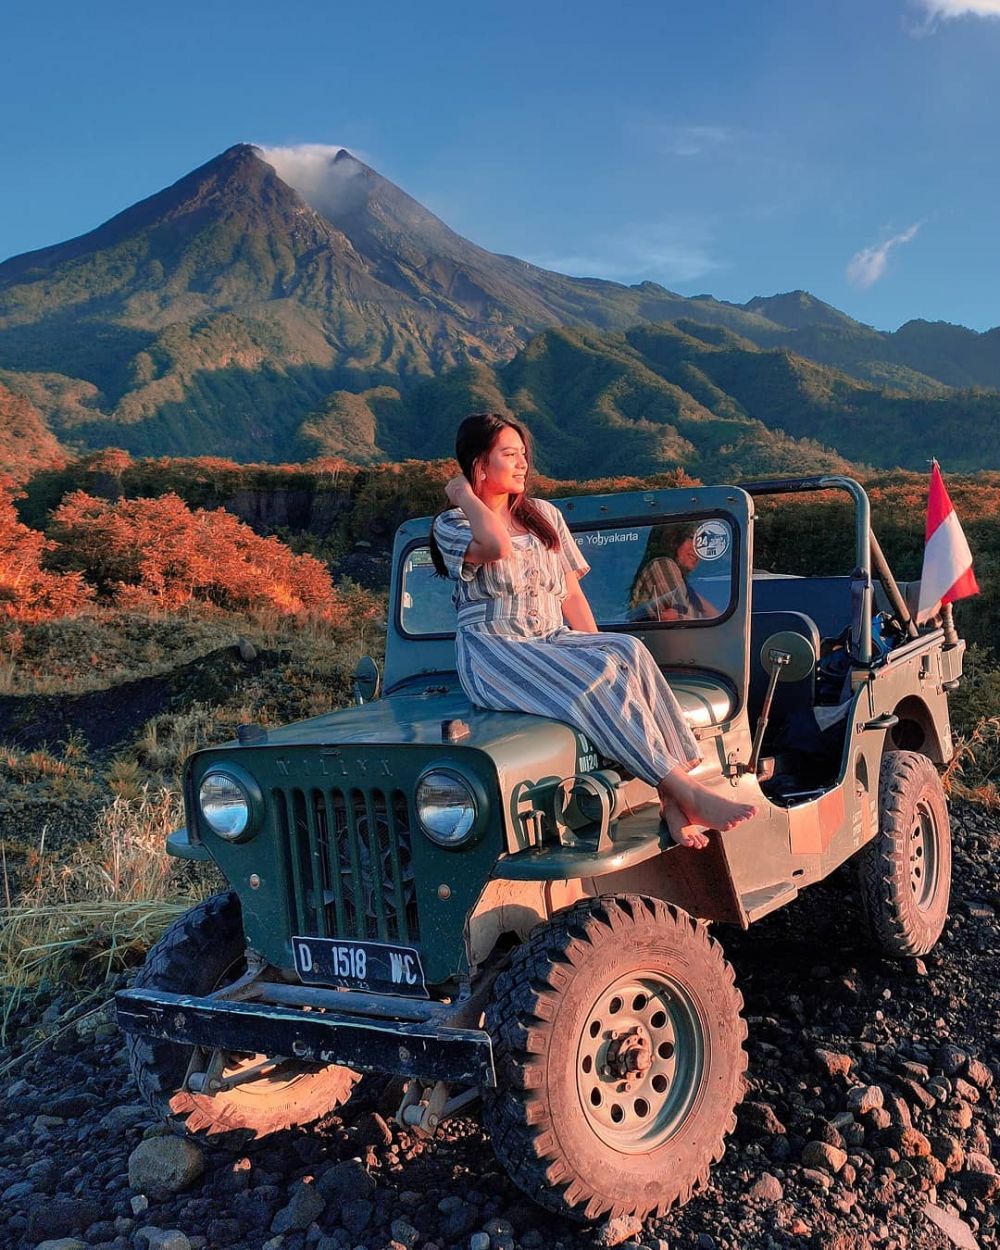 Bertualang dengan Lava Tour Merapi: Rute, Harga, dan Tips